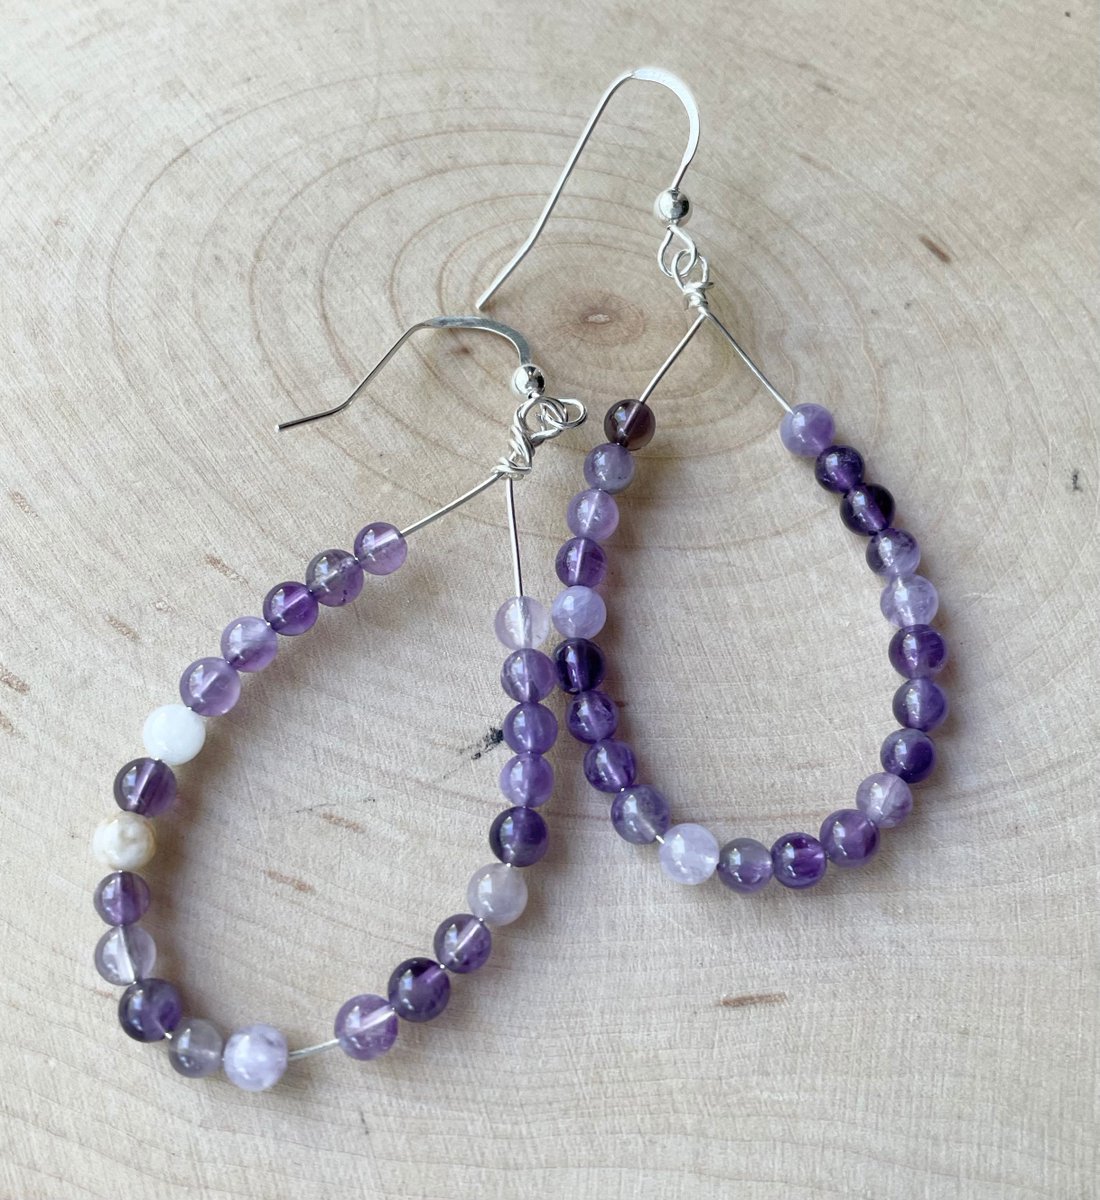 Flower Amethyst Long Hoop Earrings Sterling Silver Purple Gemstone Earrings Boho Style tuppu.net/86cf6c49 #Handcrafted #JemsbyJBandCompany #Jewelry trends